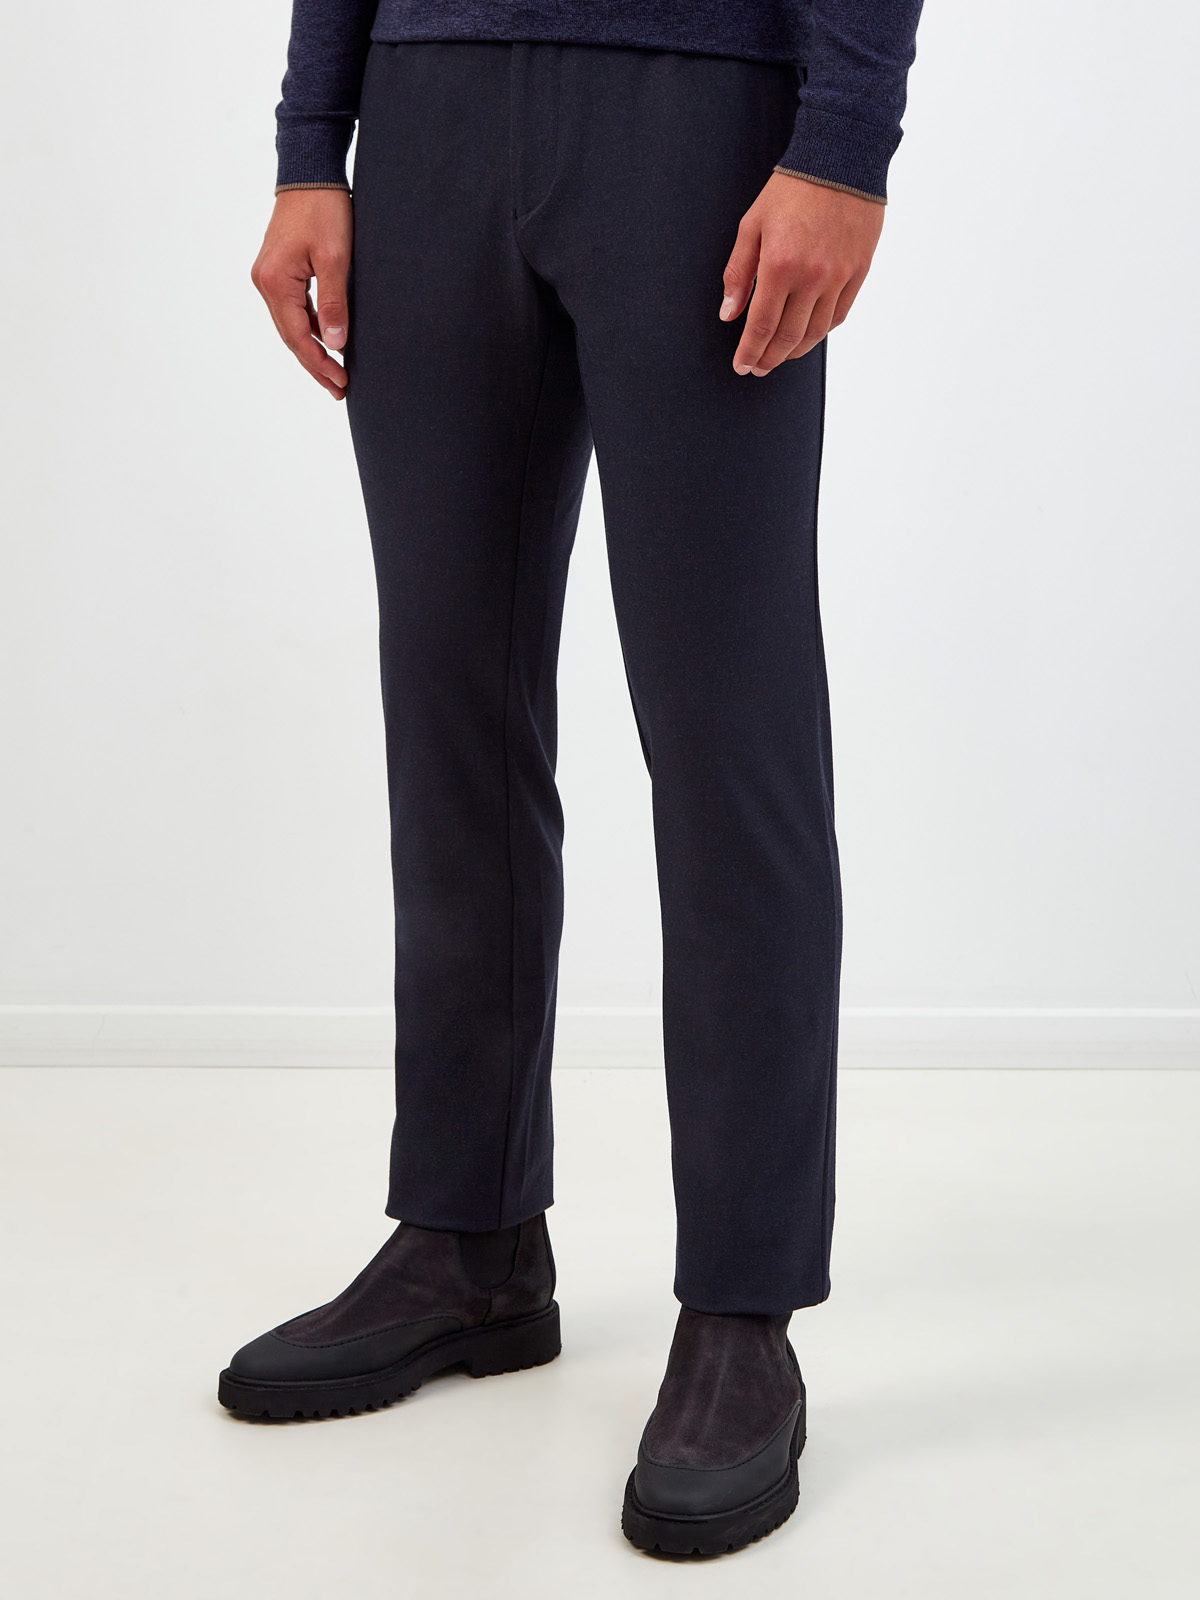 Шерстяные брюки с поясом на кулиске и вышитым логотипом CUDGI, цвет синий, размер 50;54;58;60;62 - фото 3